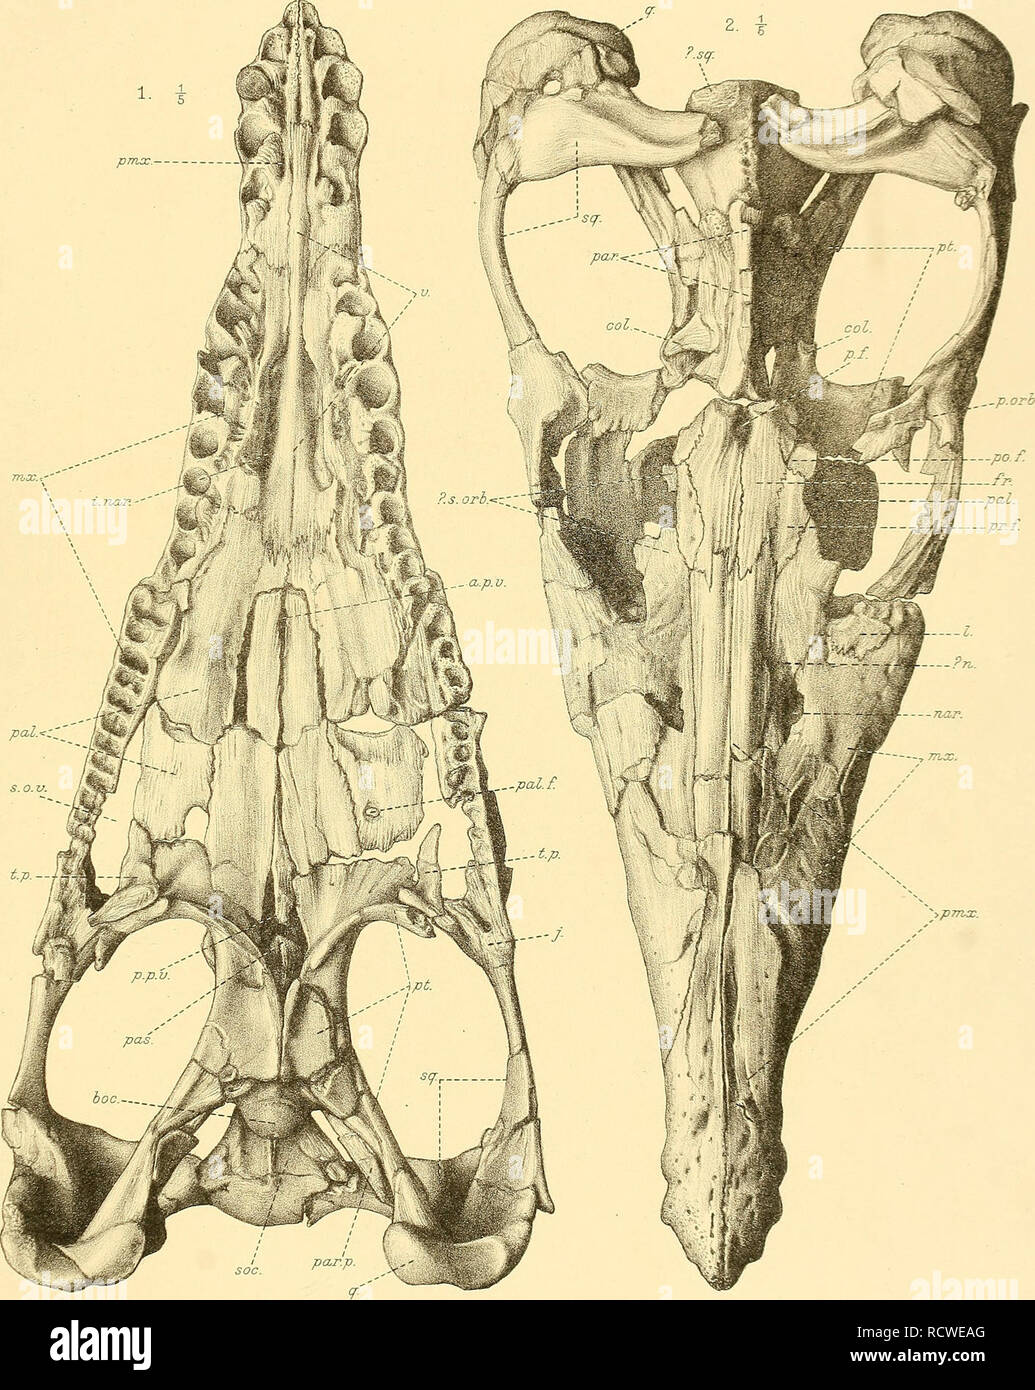 . Ein beschreibender Katalog der marinen Reptilien des Oxford clay. Auf dem Leeds Sammlung im British Museum (Natural History), London... Reptilien, Fossil. CATAL. MARINE gehalten. OXFORD CLAY. Teil II. Platte I. pmcc.. &Gt; p77 ia:. G.M. Woodward del. etlibh. West, Newman imp. PLIOSAURUS EEROX.. Bitte beachten Sie, dass diese Bilder sind von der gescannten Seite Bilder, die digital für die Lesbarkeit verbessert haben mögen - Färbung und Aussehen dieser Abbildungen können nicht perfekt dem Original ähneln. extrahiert. British Museum (Natural History). Abt. der Geologie; Andrews, Charles William, Stockfoto